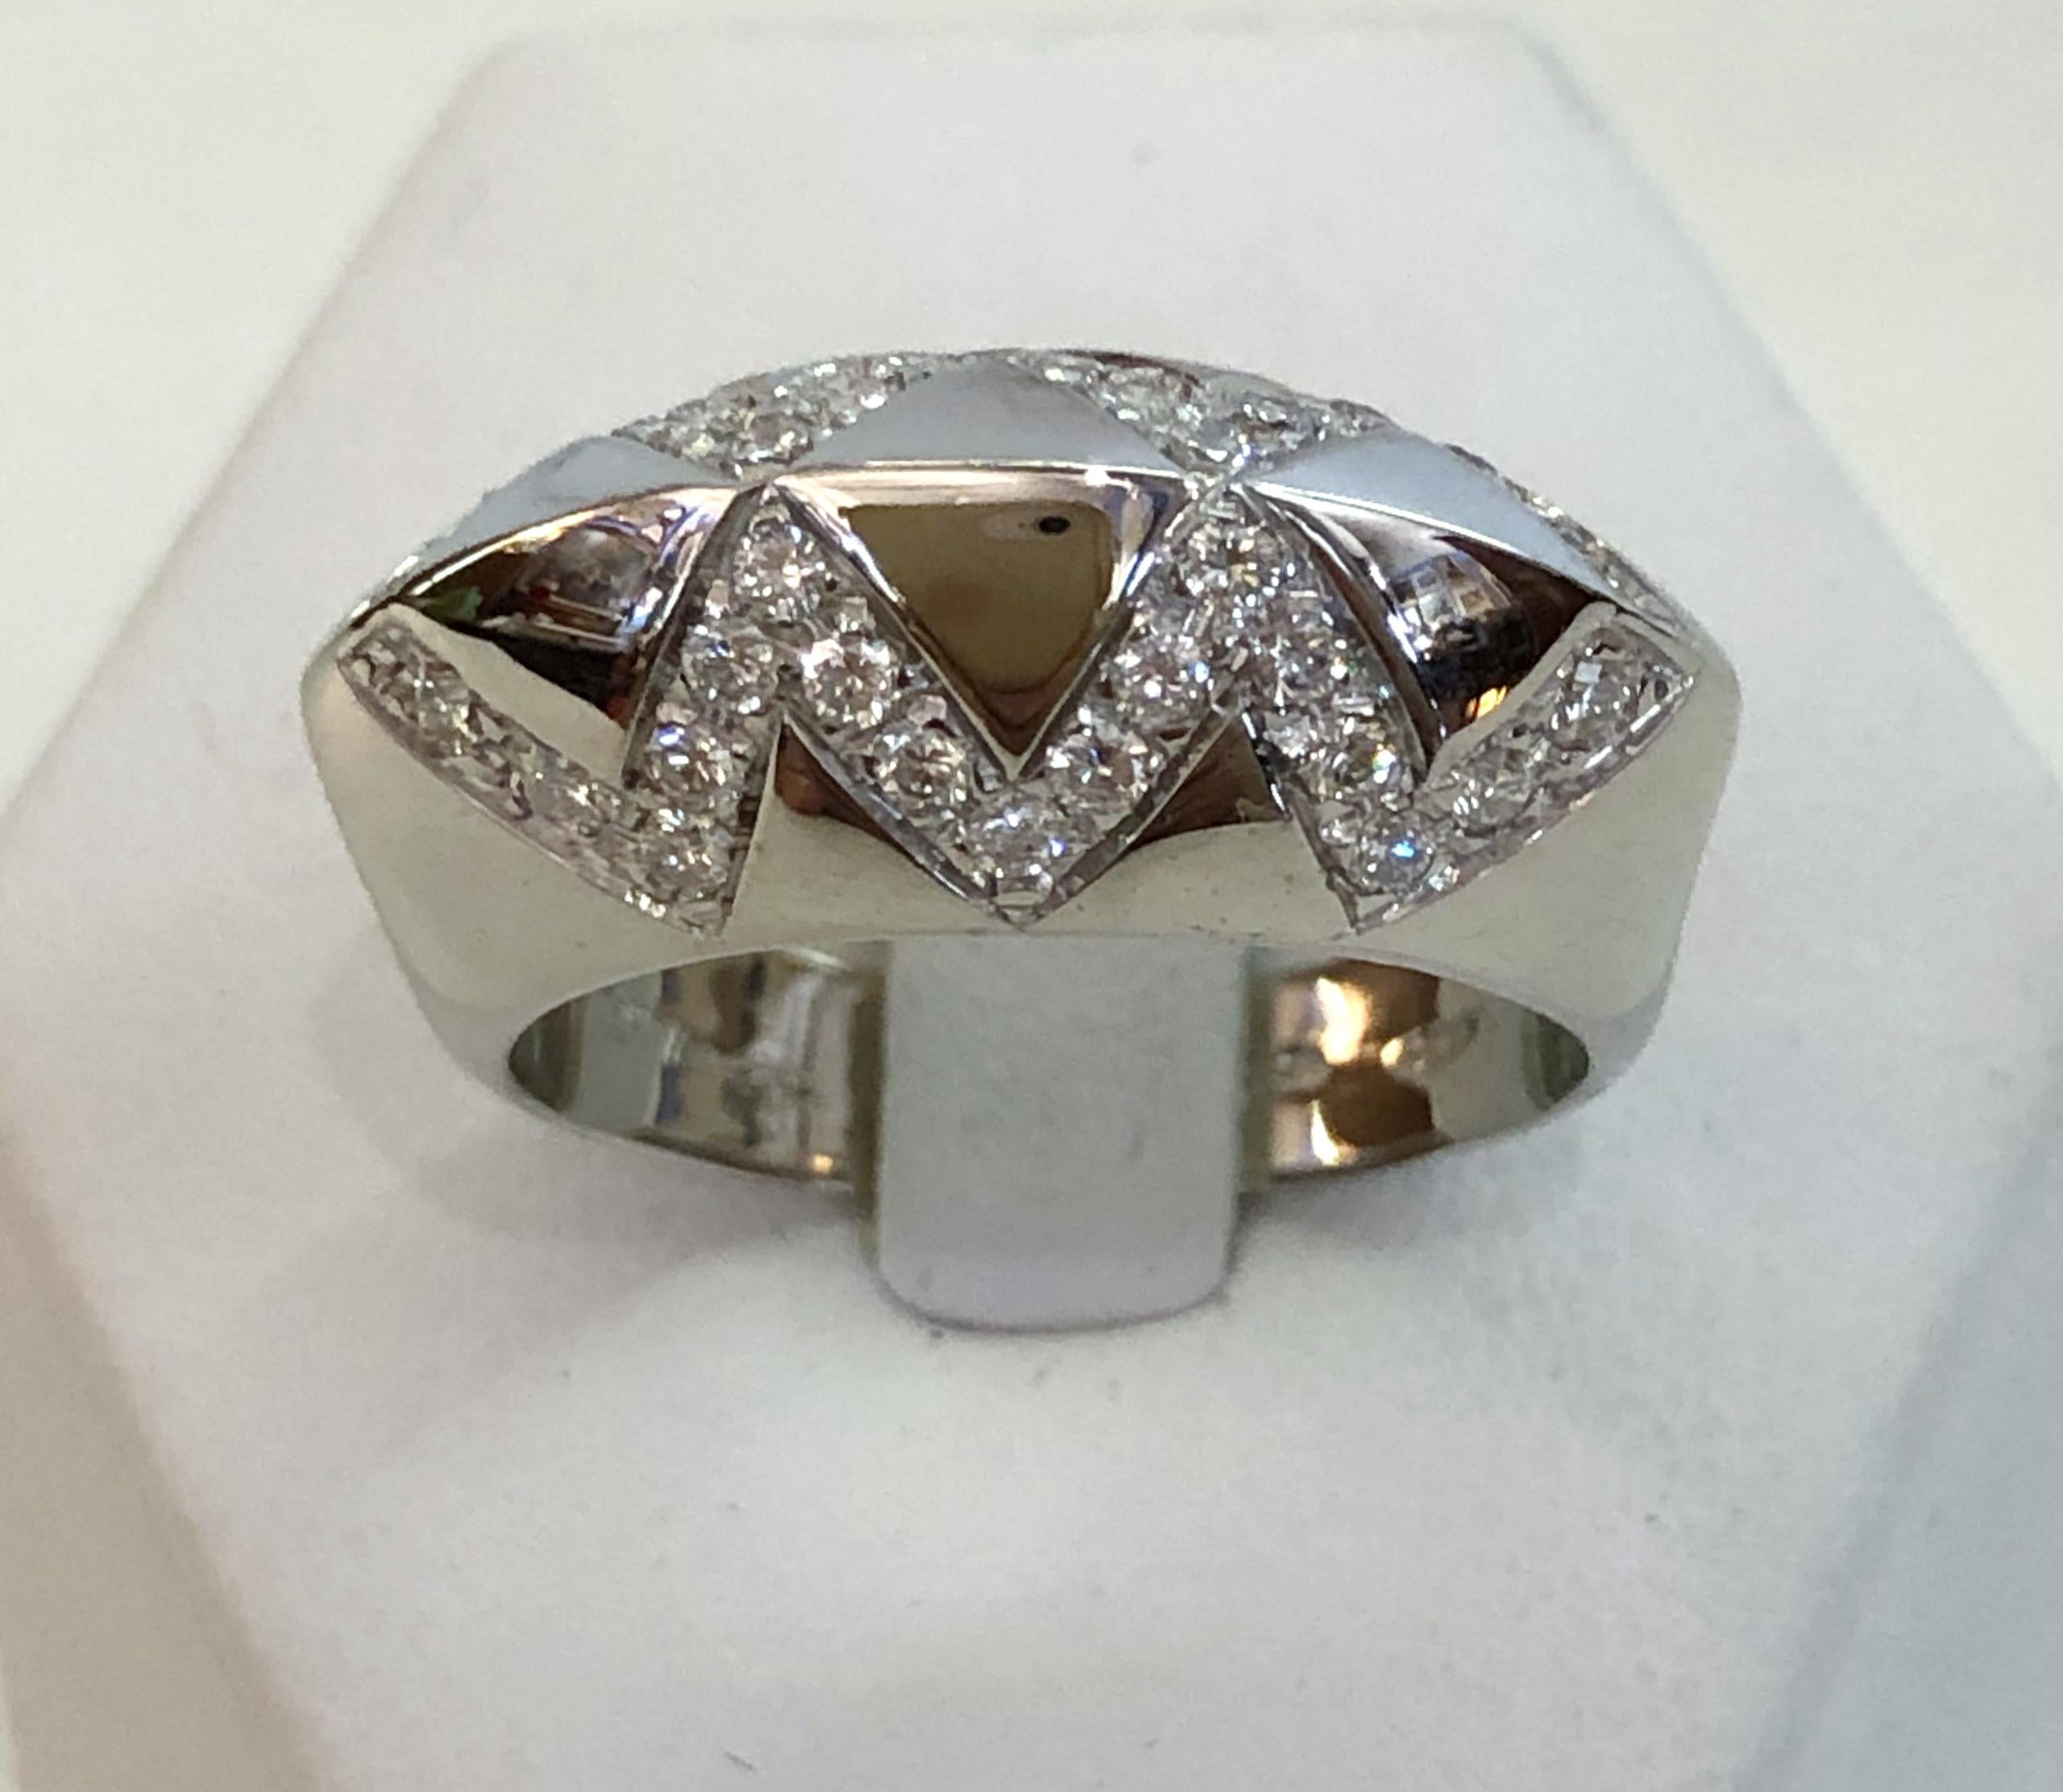 Bague à anneau en or blanc 18 carats avec des diamants brillants pour un total de 0,5 carats, formant un motif grec en zigzag / Italie 1970
Bague taille US 7.5